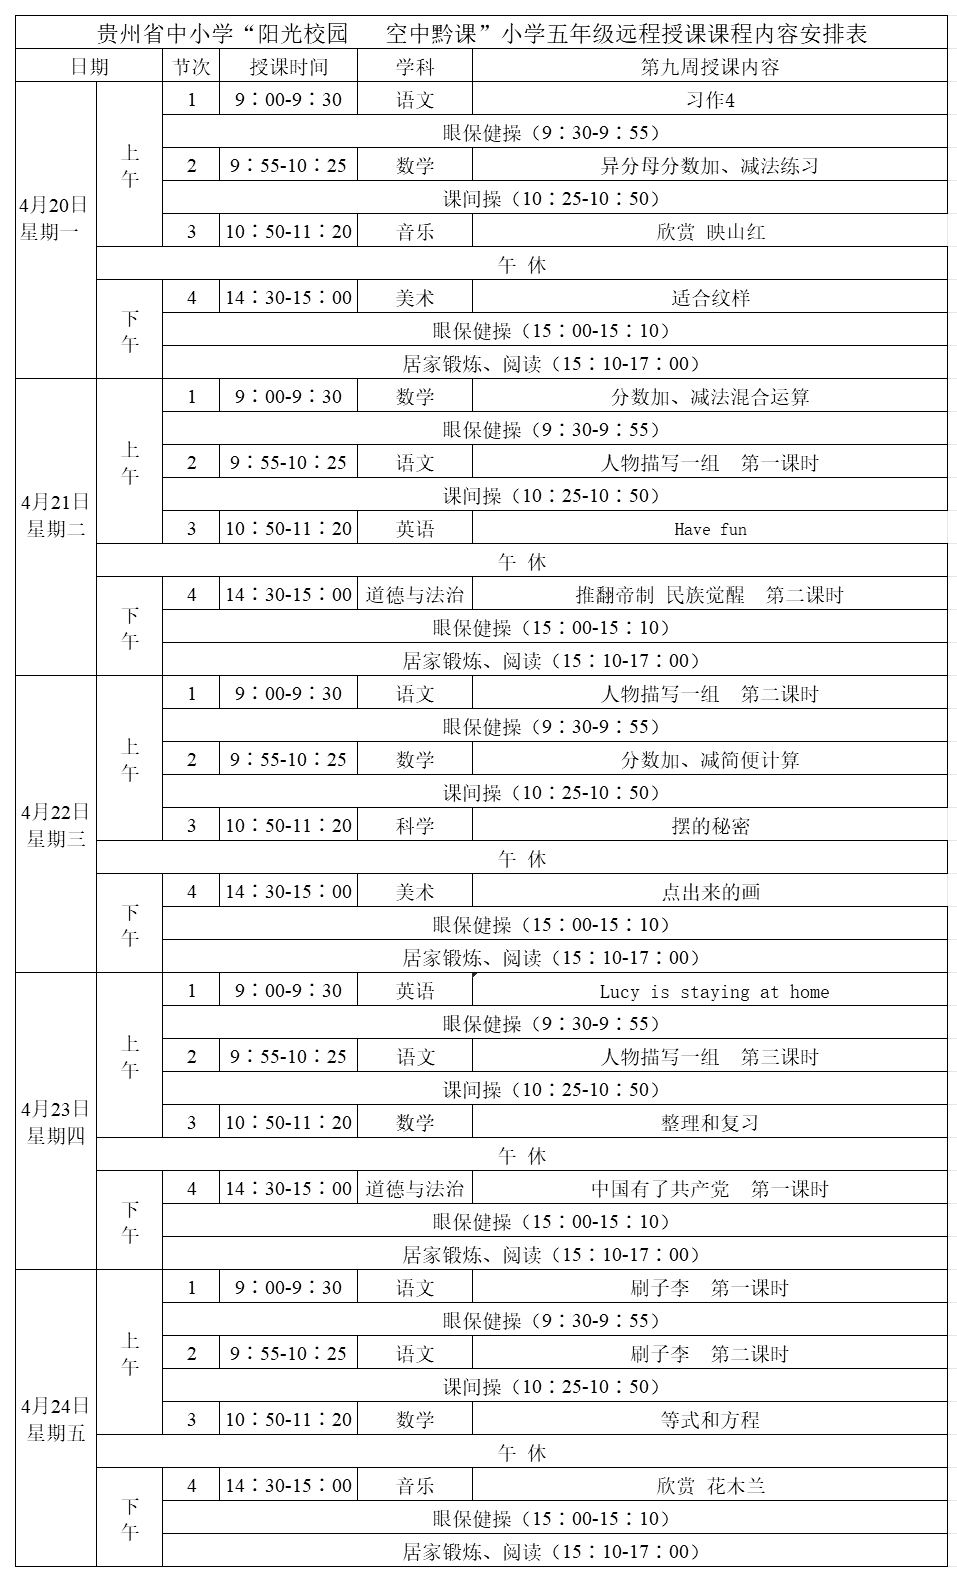 贵州中小学“空中课堂”课程表完整版公布（4月20日13